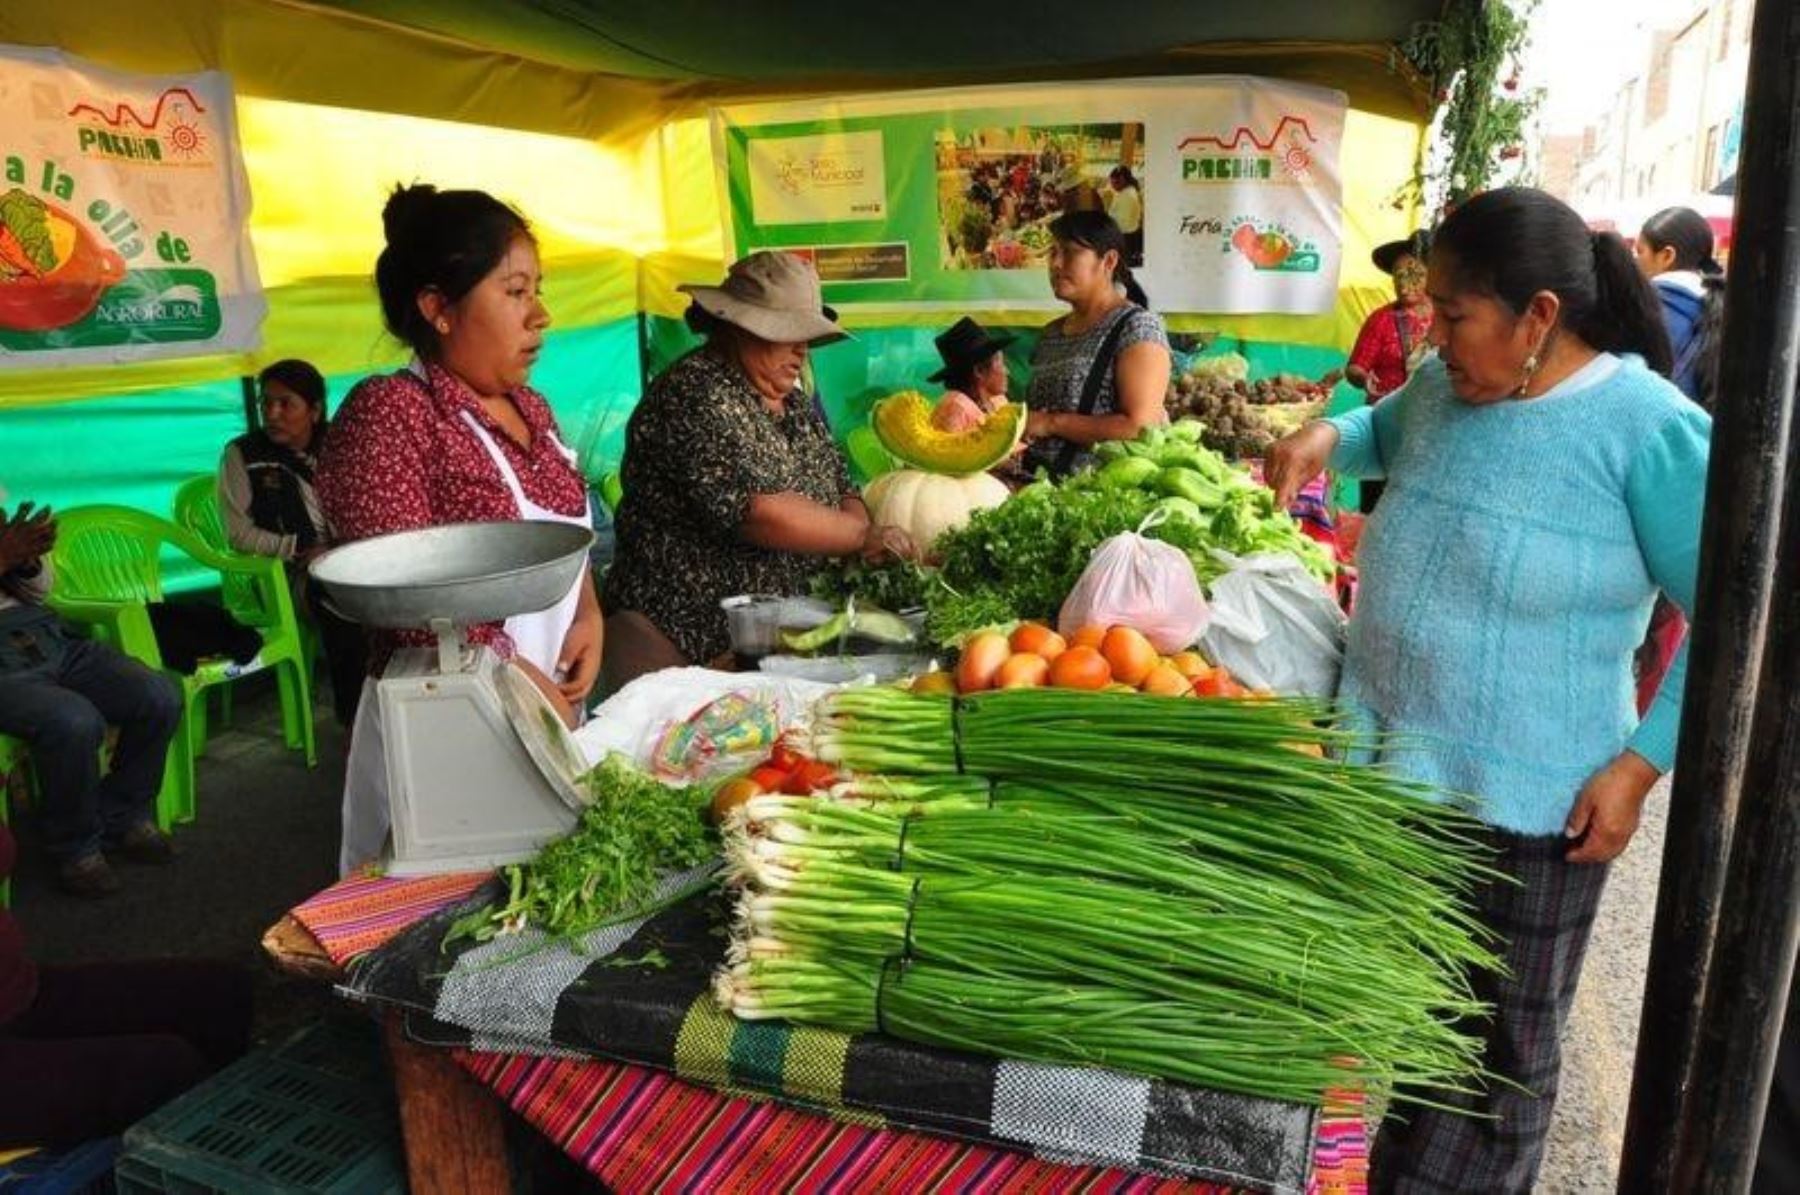 Ministerio de Agricultura organiza mercados itinerantes con productores agropecuarios de provincias para atender a consumidores.